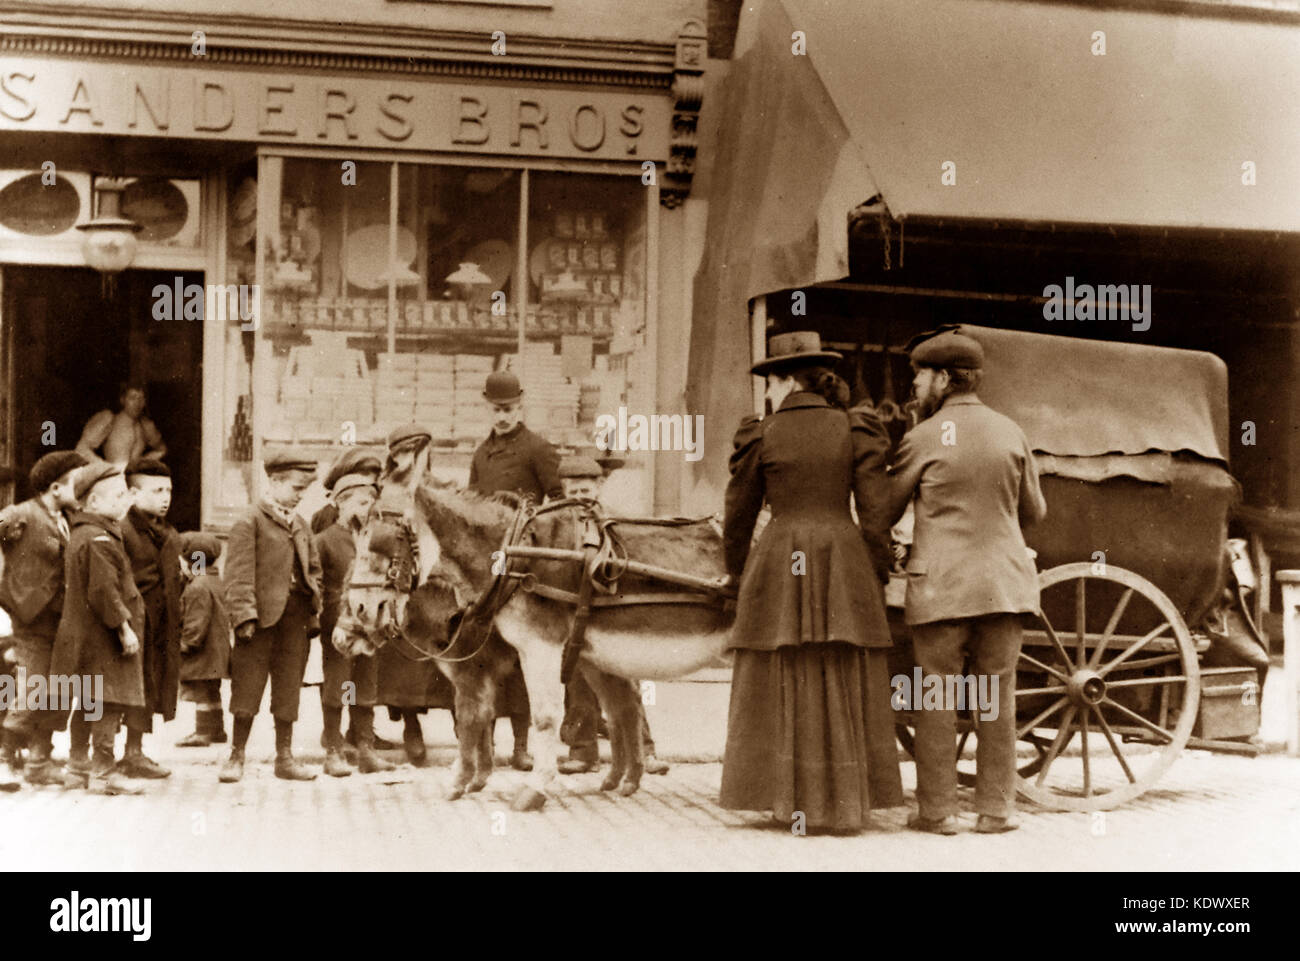 Donkey cart, London, early 1900s Stock Photo